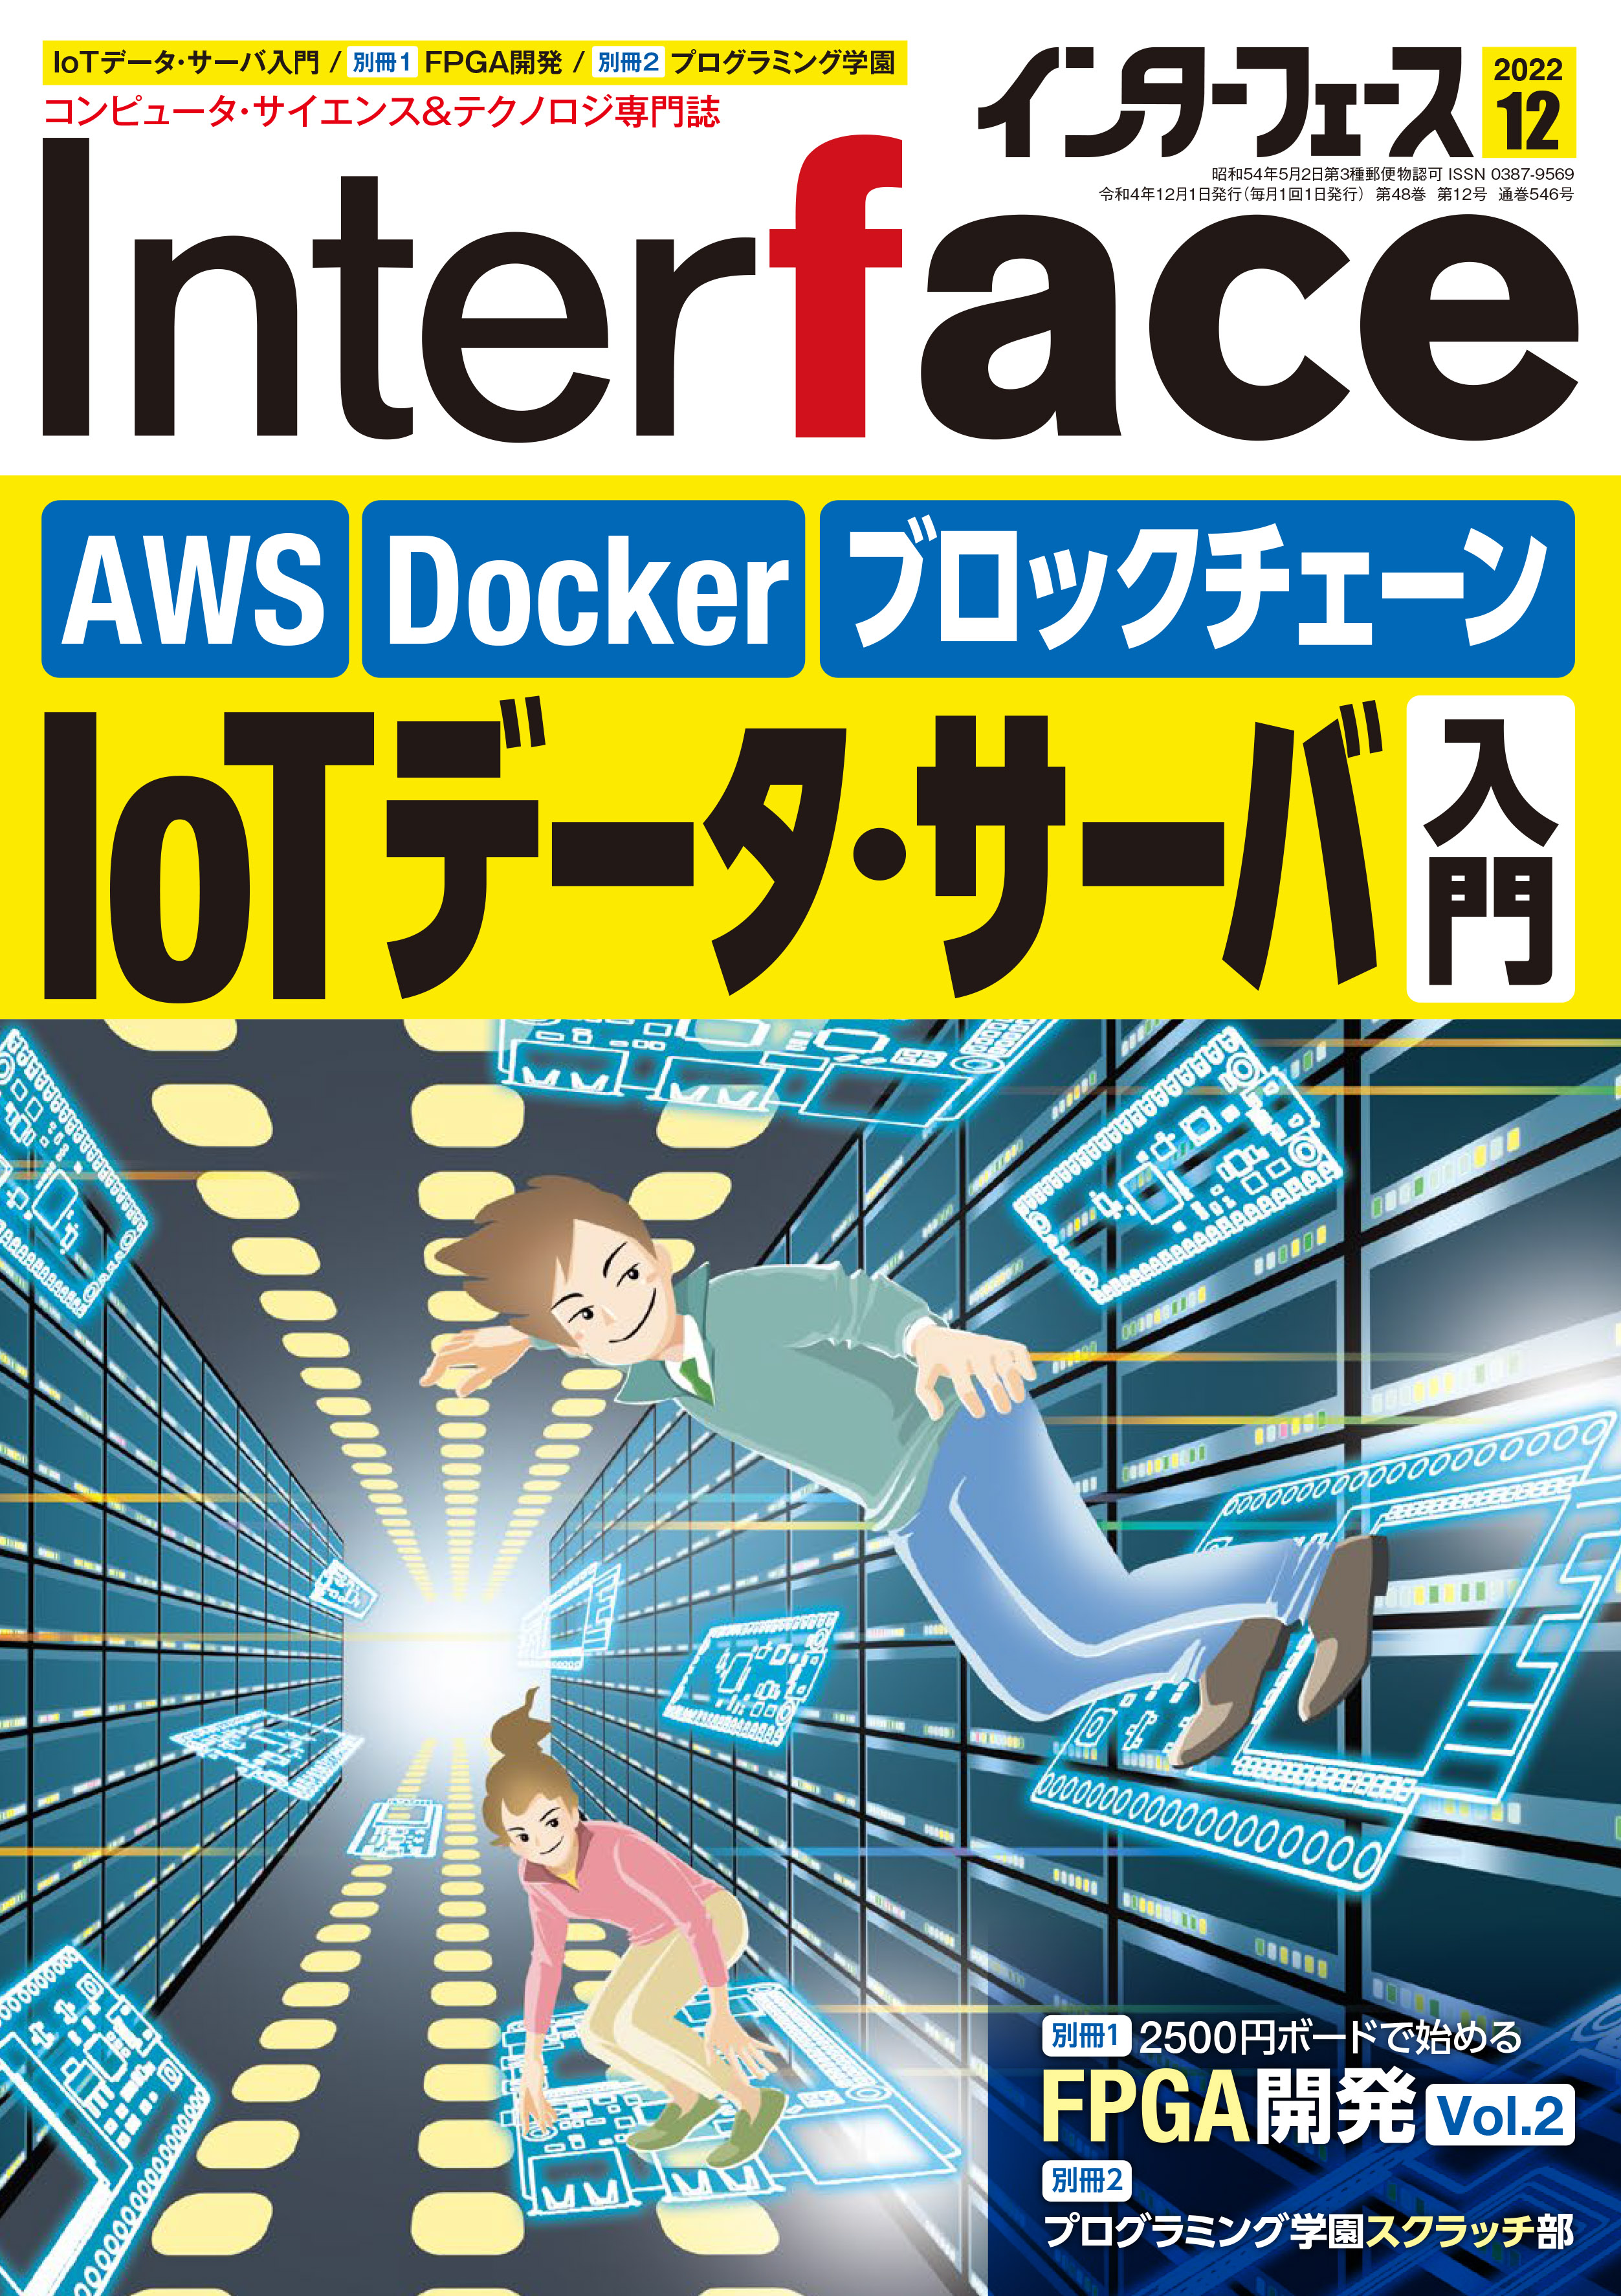 コンピュータ技術実験雑誌「Interface」（毎月25日発売，CQ出版社